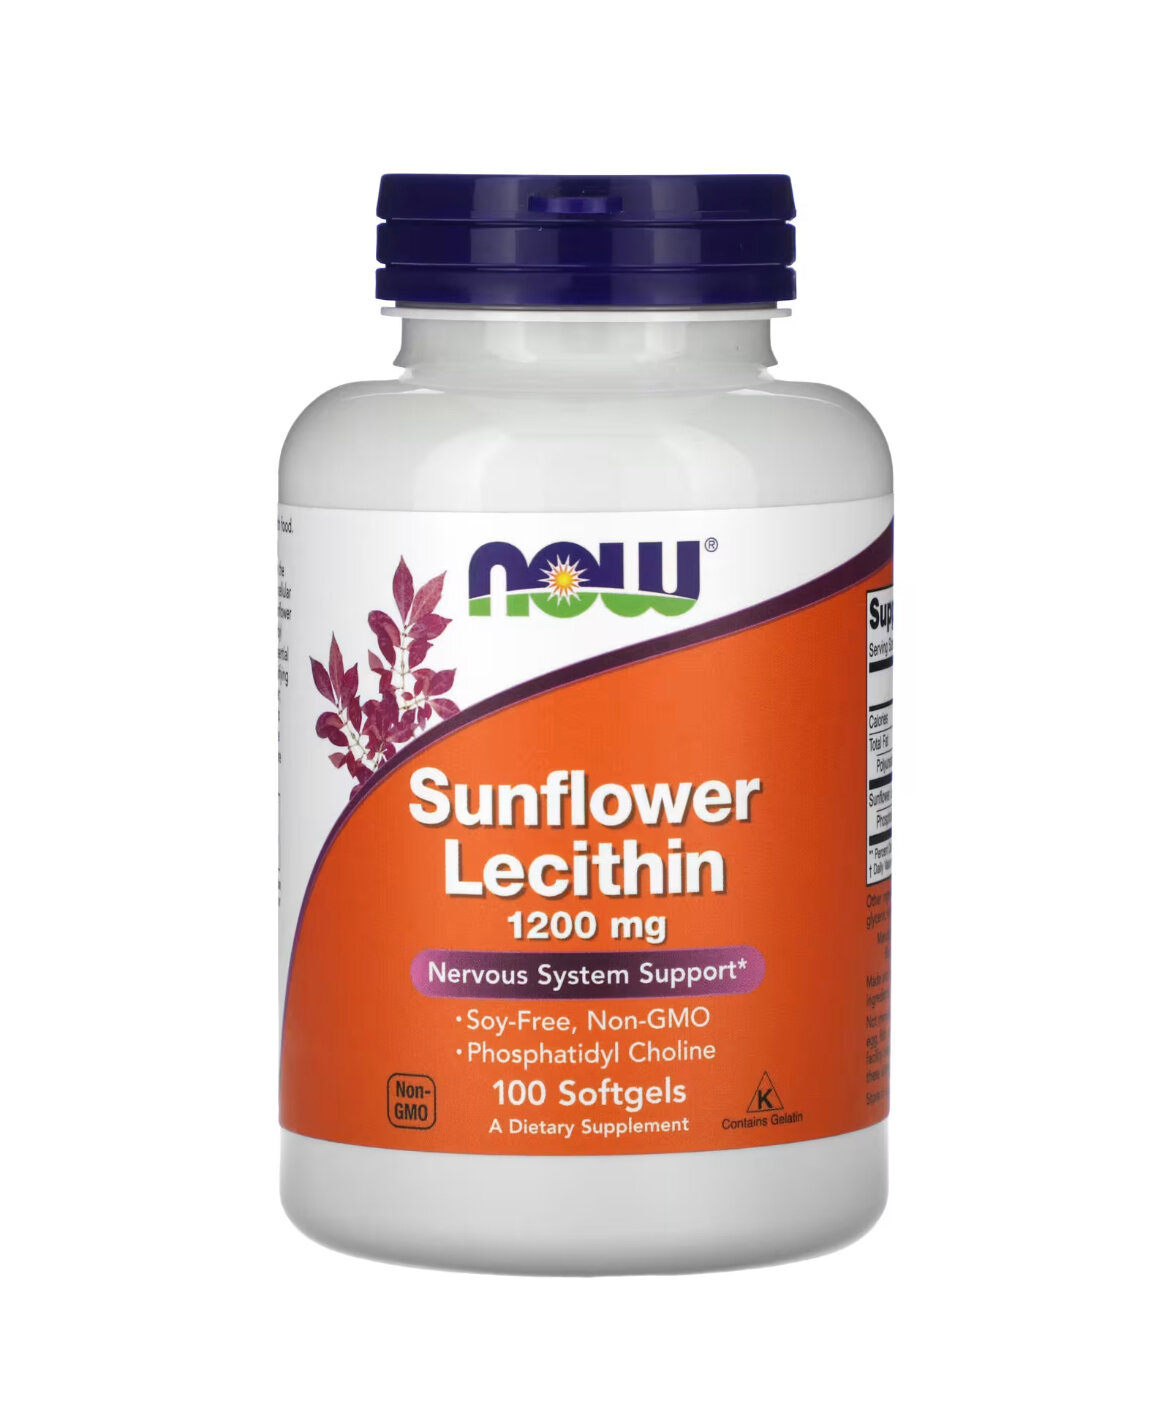 Sunflower Lecithin, Лецитин из Подсолнечника, 1200 мг, 100 мягких капсул